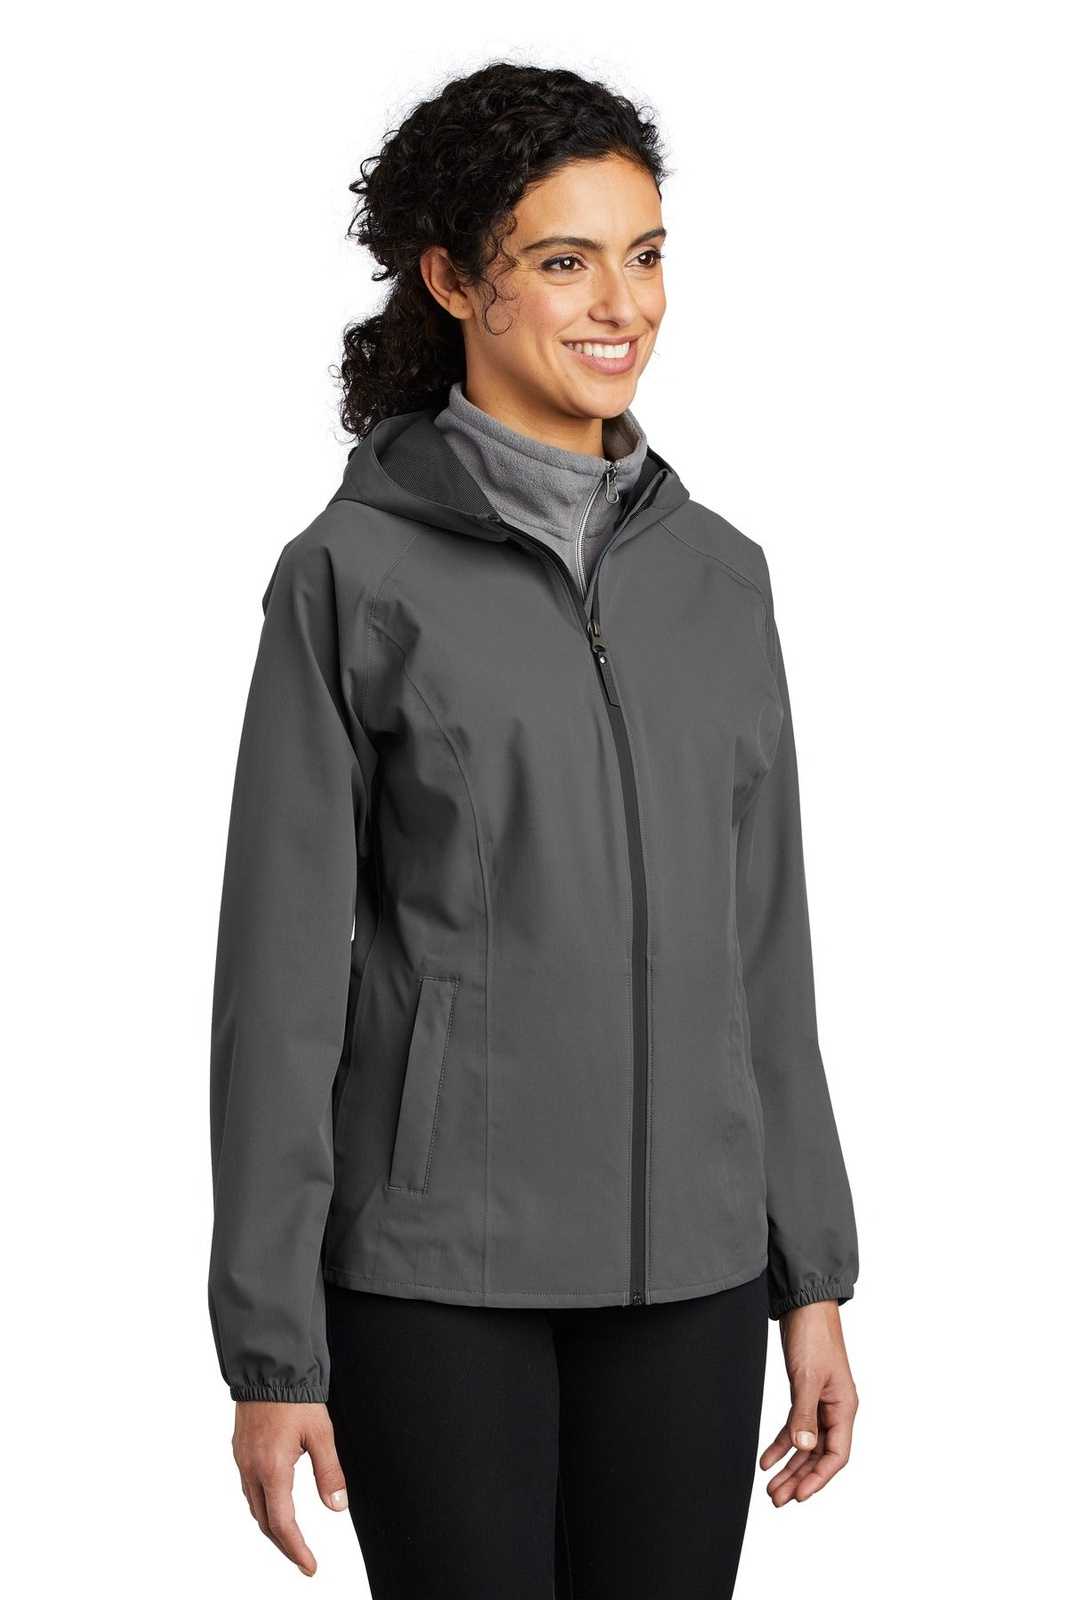 Port Authority L407 Ladies Essential Rain Jacket - Graphite Gray - HIT a Double - 4